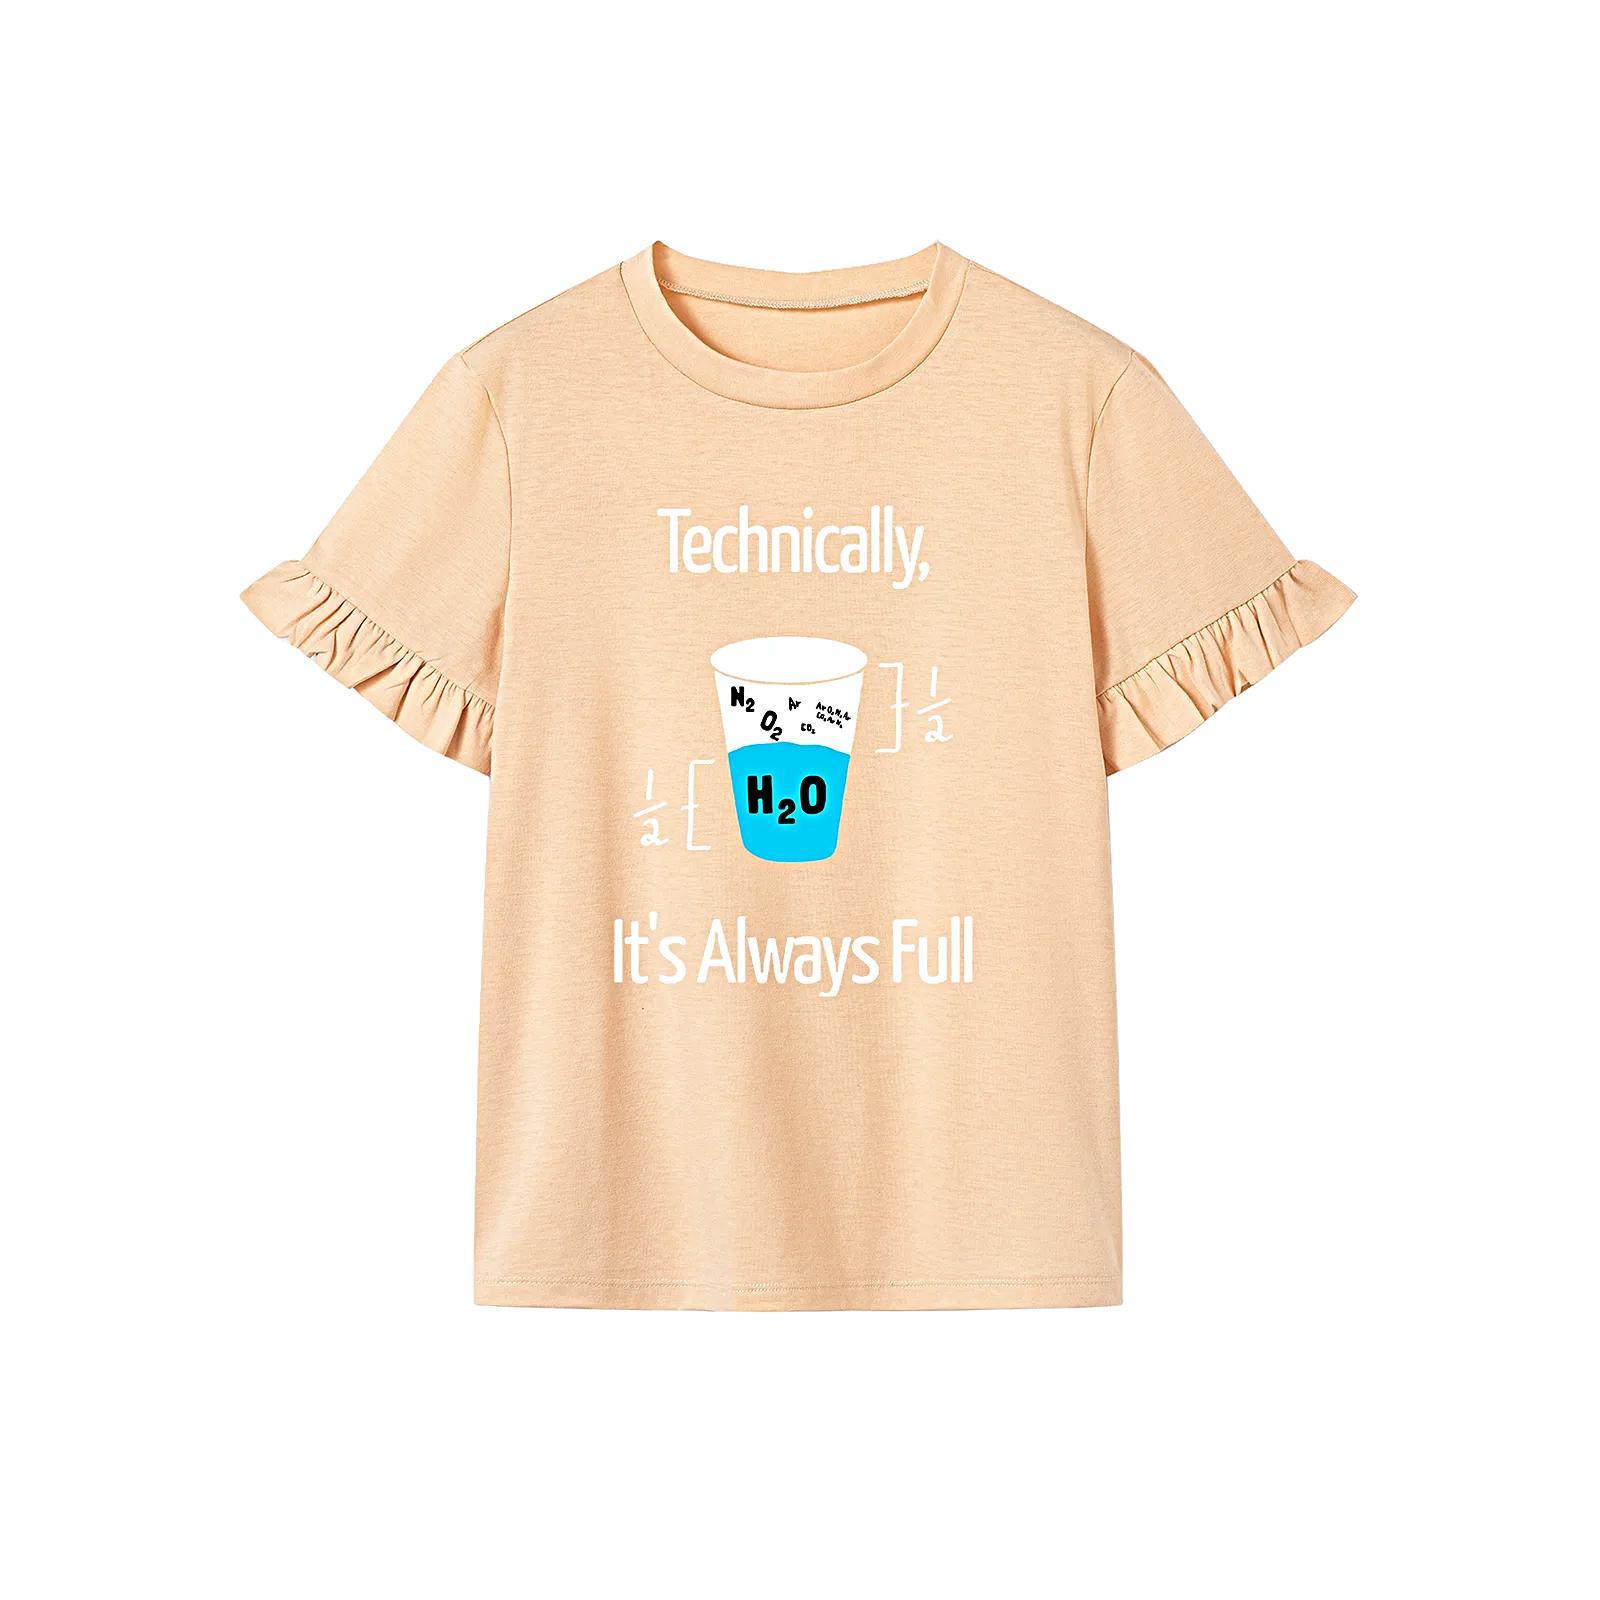 T Shirt for Women Summer Trendy Crewneck Shirt for Daily Wear Beach Shopping M